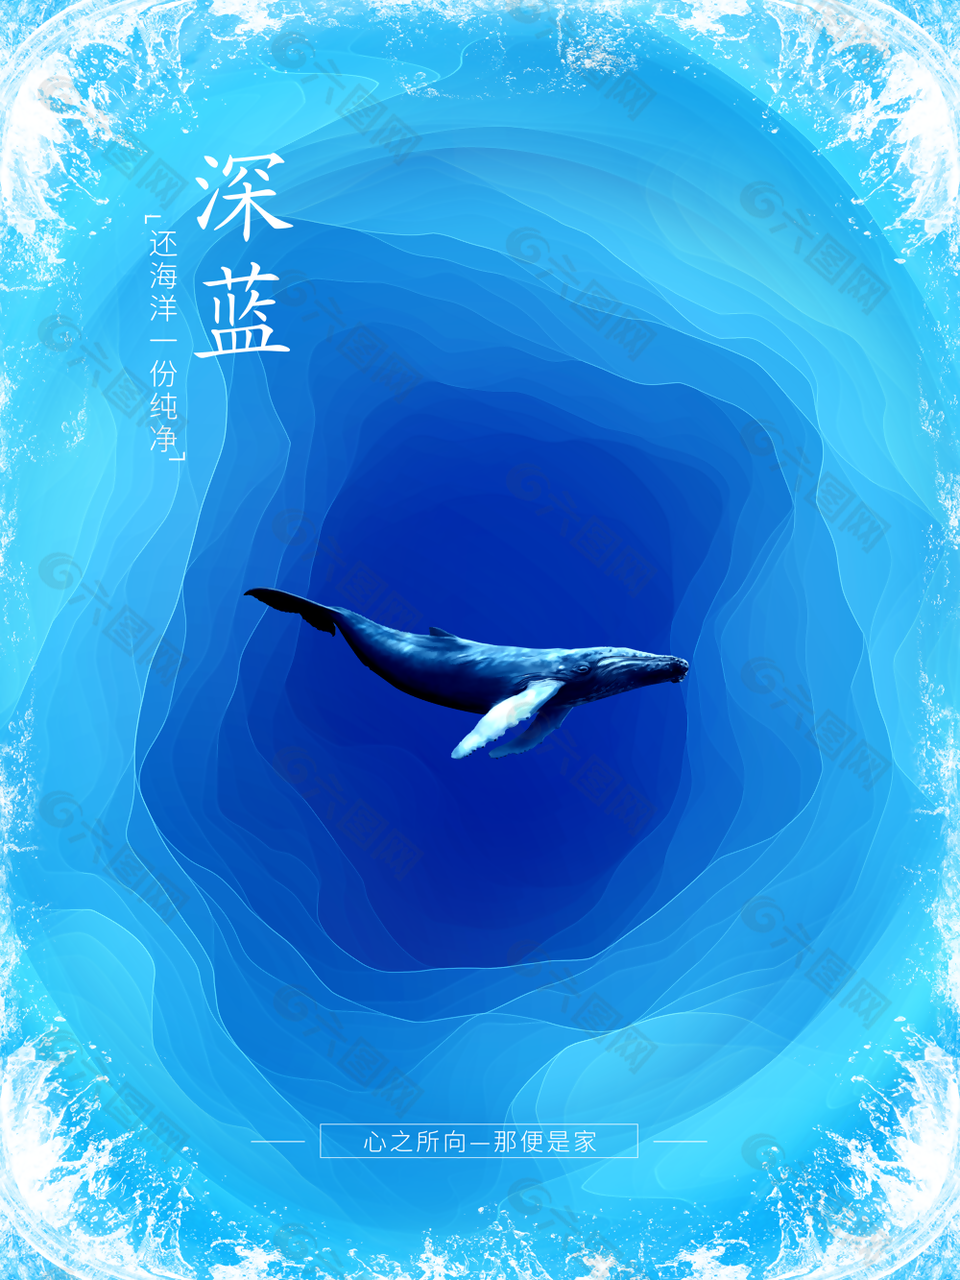 深蓝保护海洋公益宣传海报图设计